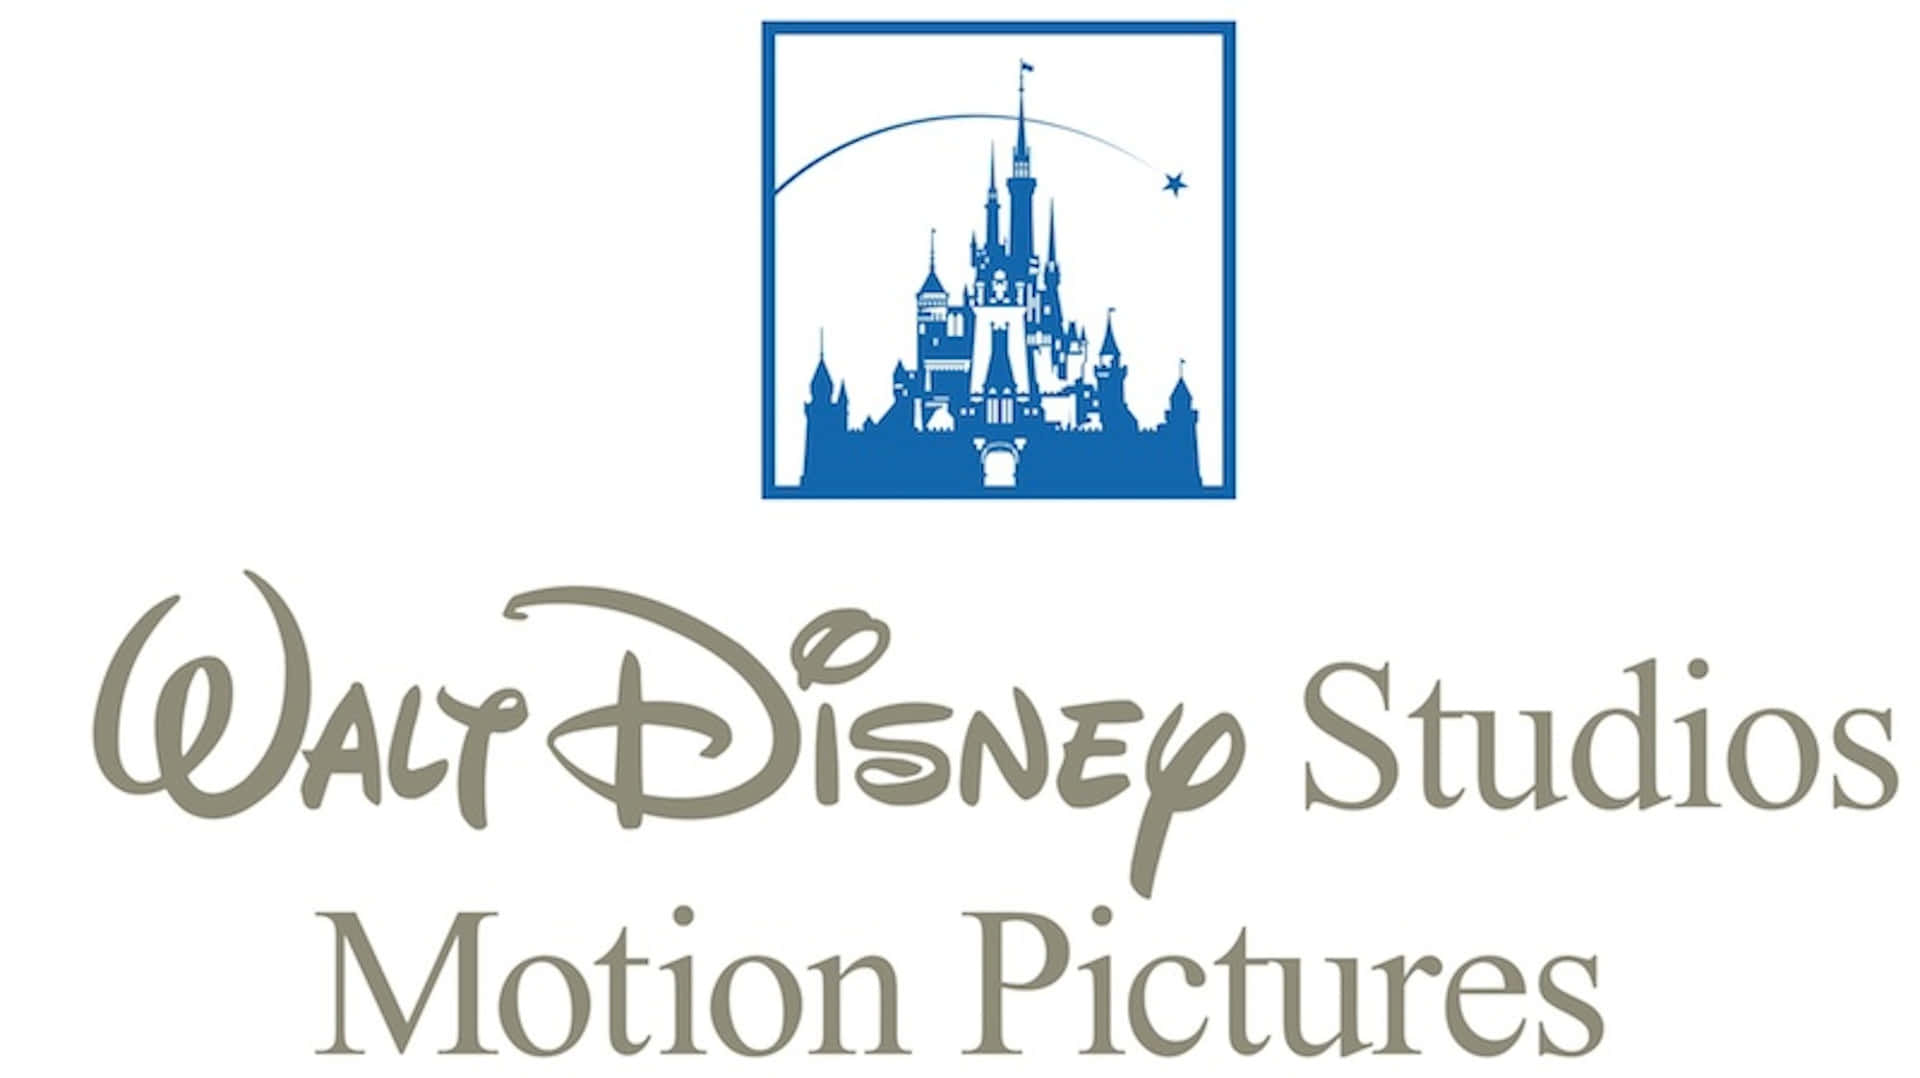 Waltdisney Studios Motion Pictures: Un Mondo Di Avventure E Immaginazione.